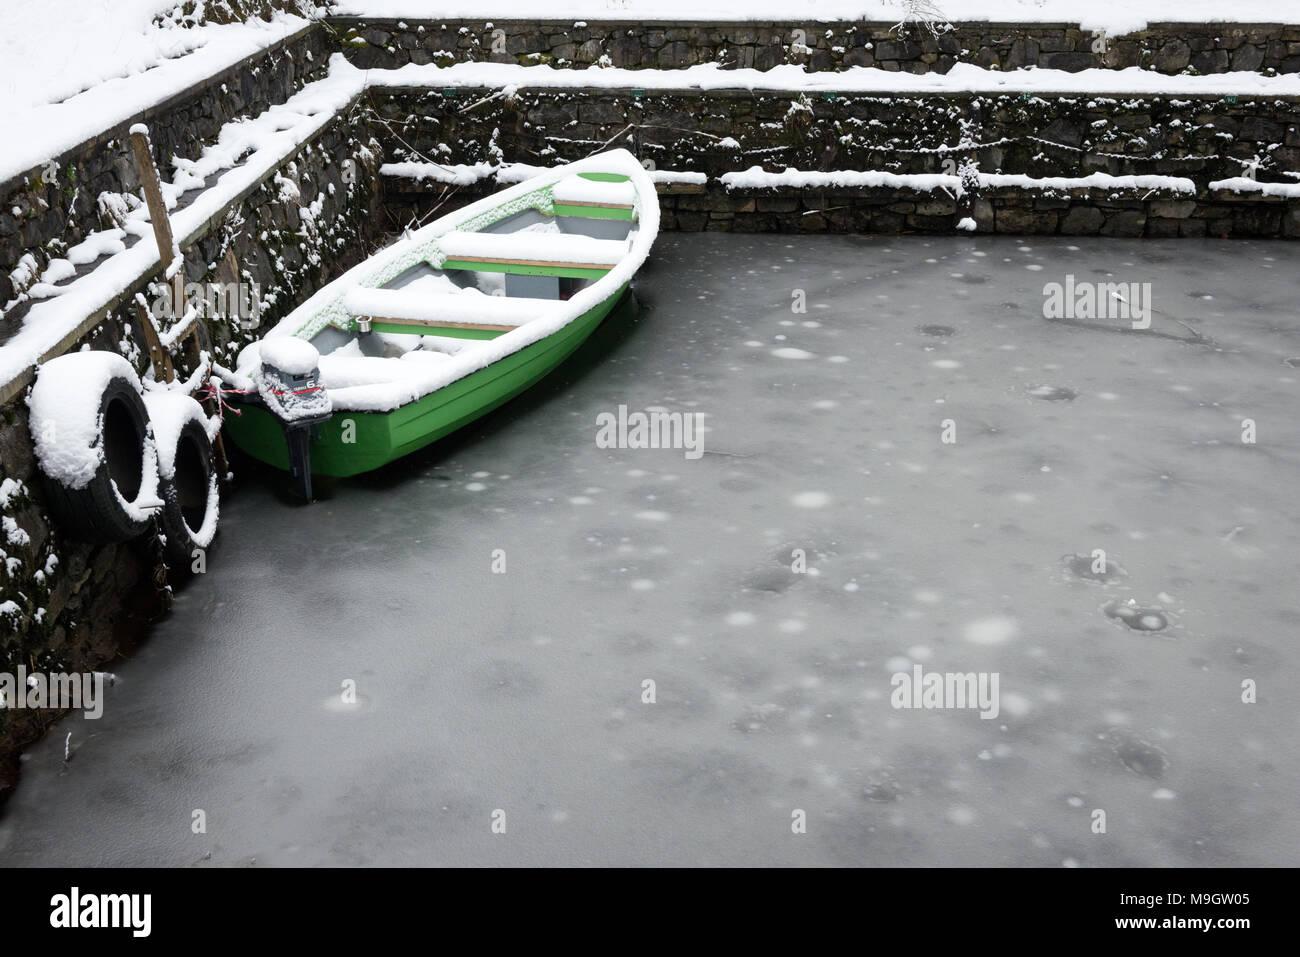 Bateau de pêche vert amarré dans l'eau gelée. Chutes de neige importantes dans le parc national de Killarney, comté de Kerry, Irlande en mars 2018 Banque D'Images